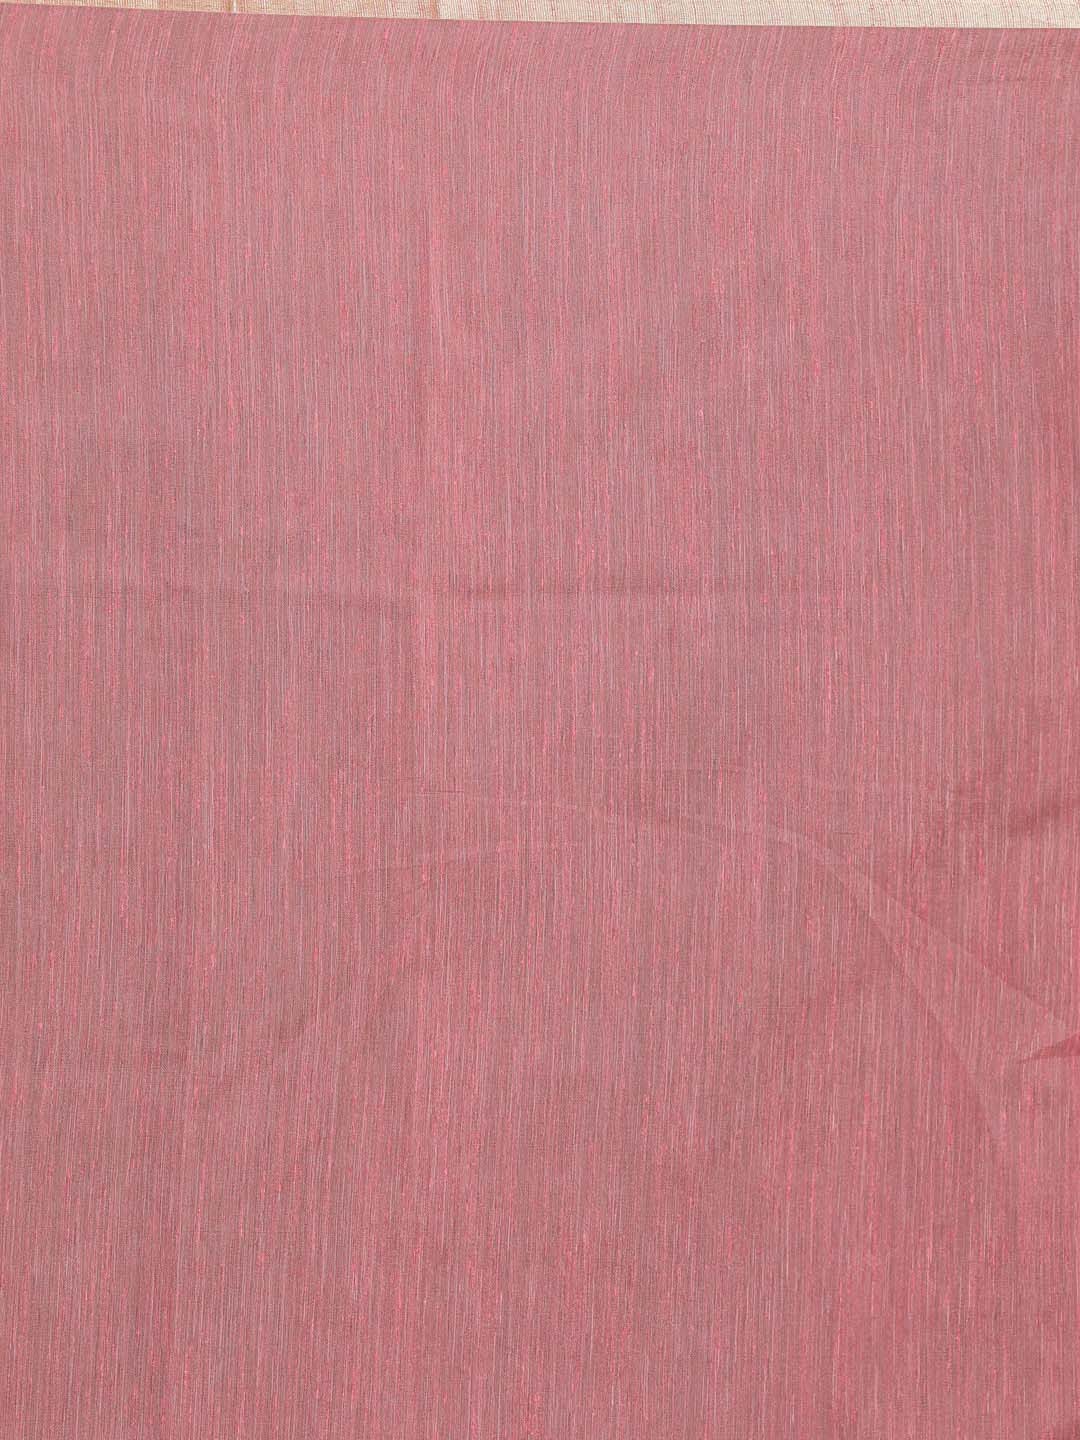 Indethnic Banarasi Pink Solid Daily Wear Saree - Saree Detail View